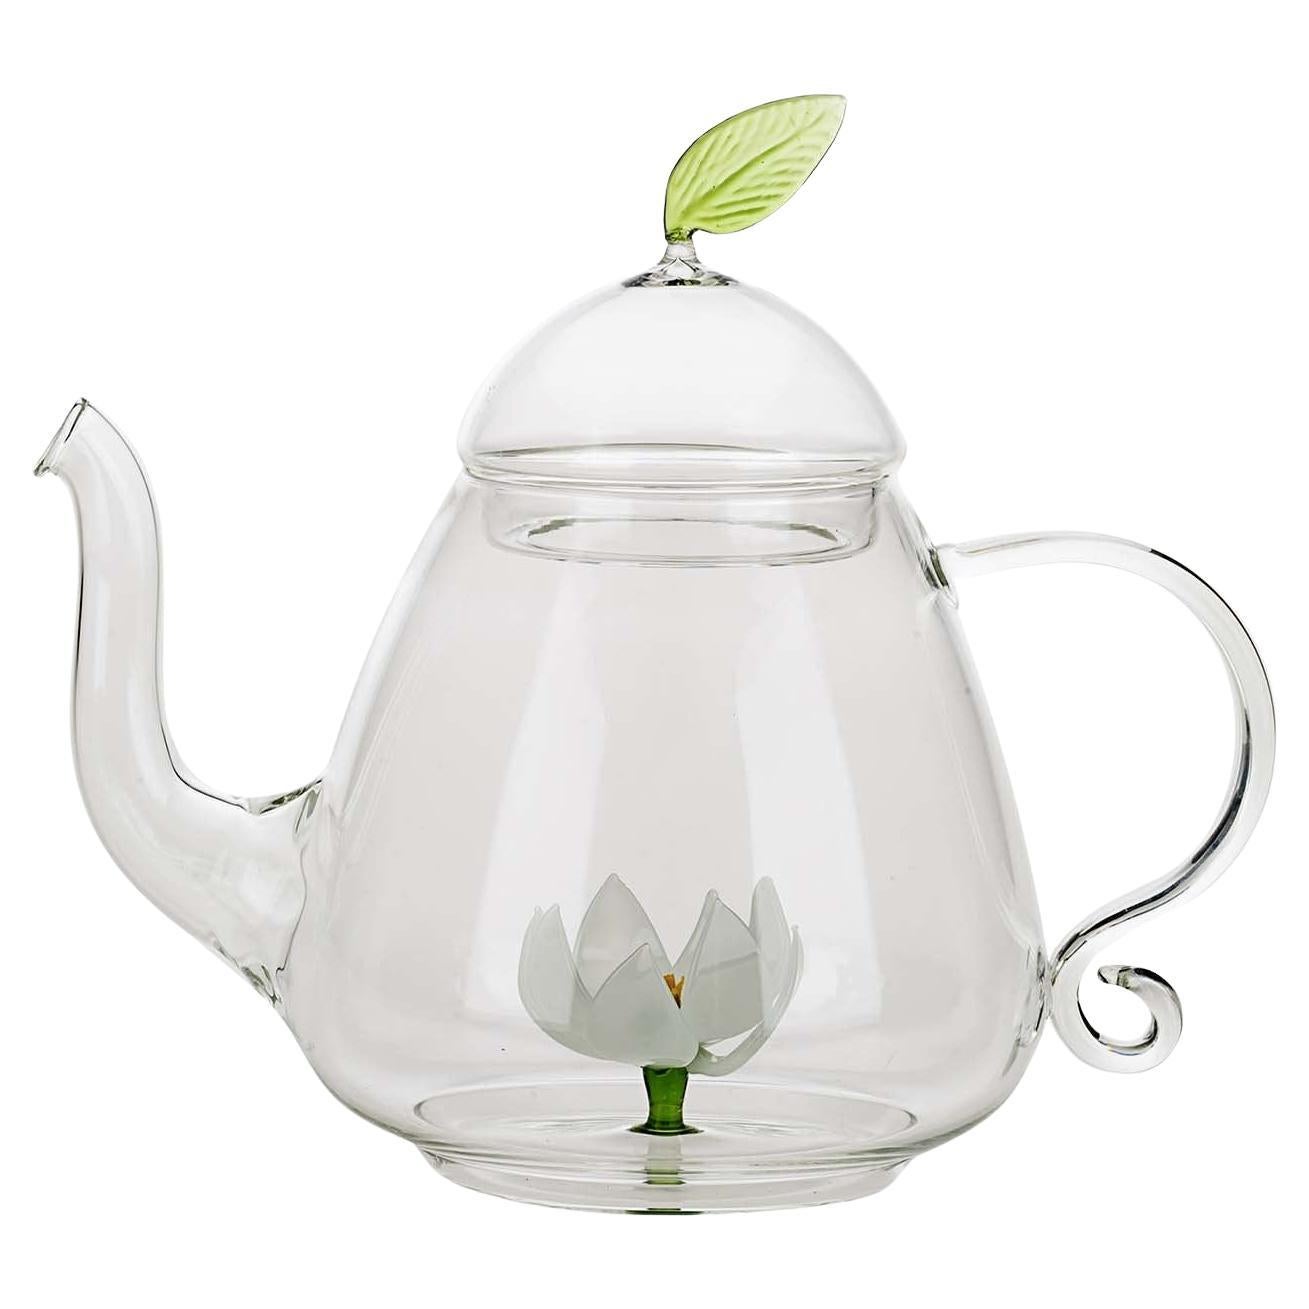 Lotus Tea Pot For Sale